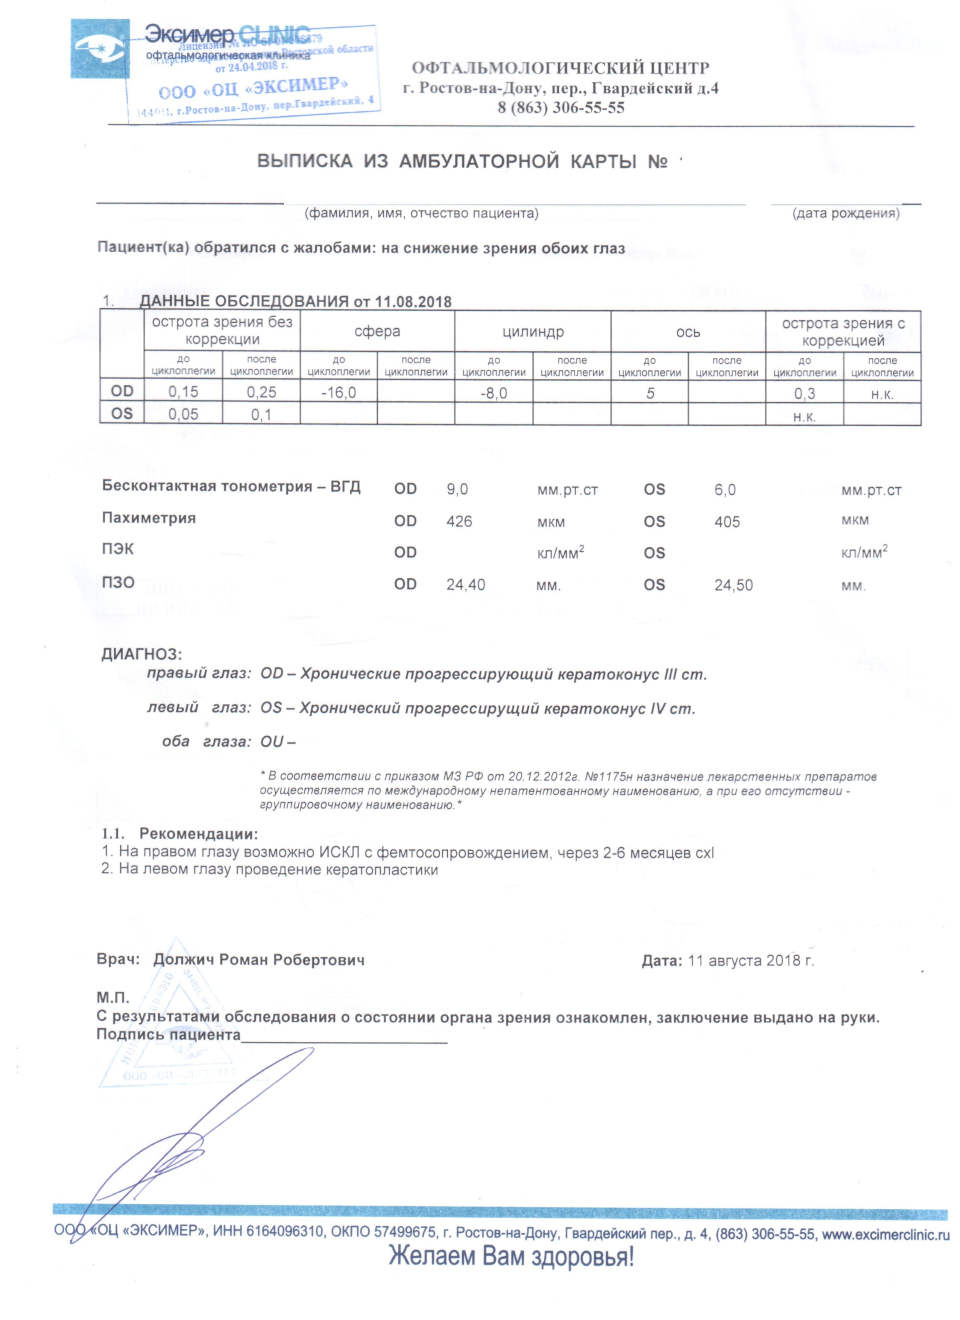 Лечение кератоконуса в Ростове на Дону или в Москве